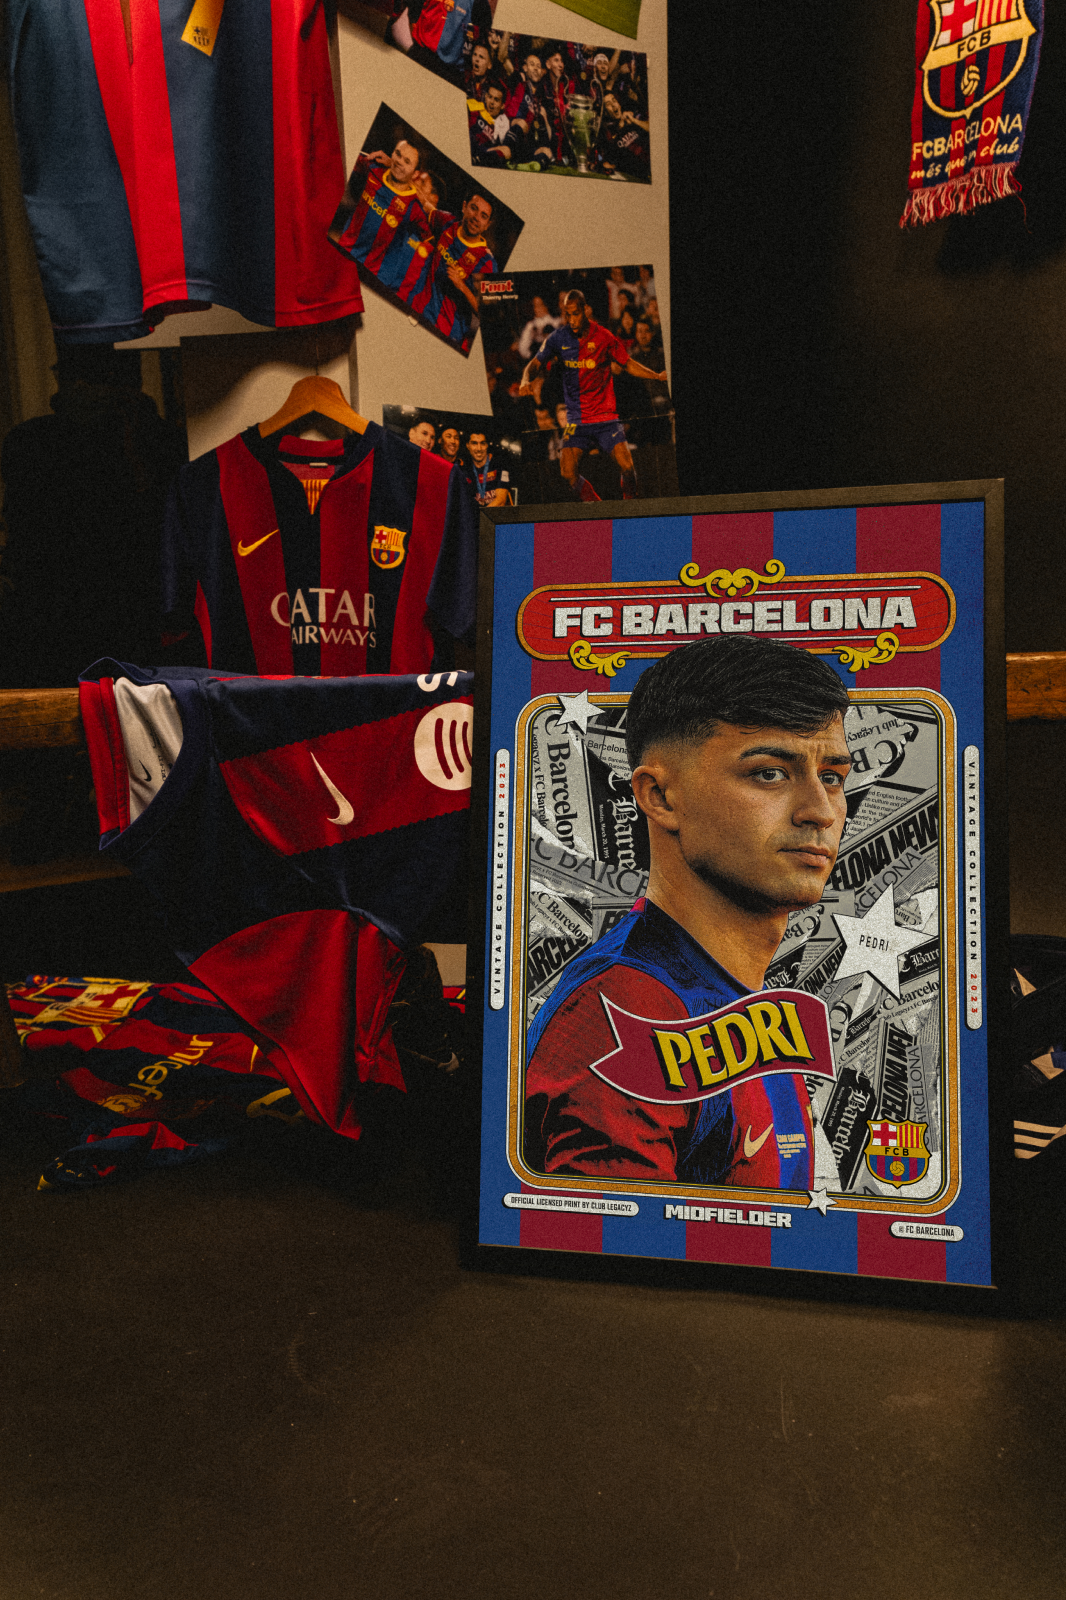 FC Barcelona - Pedri Retro Poster limited to 100